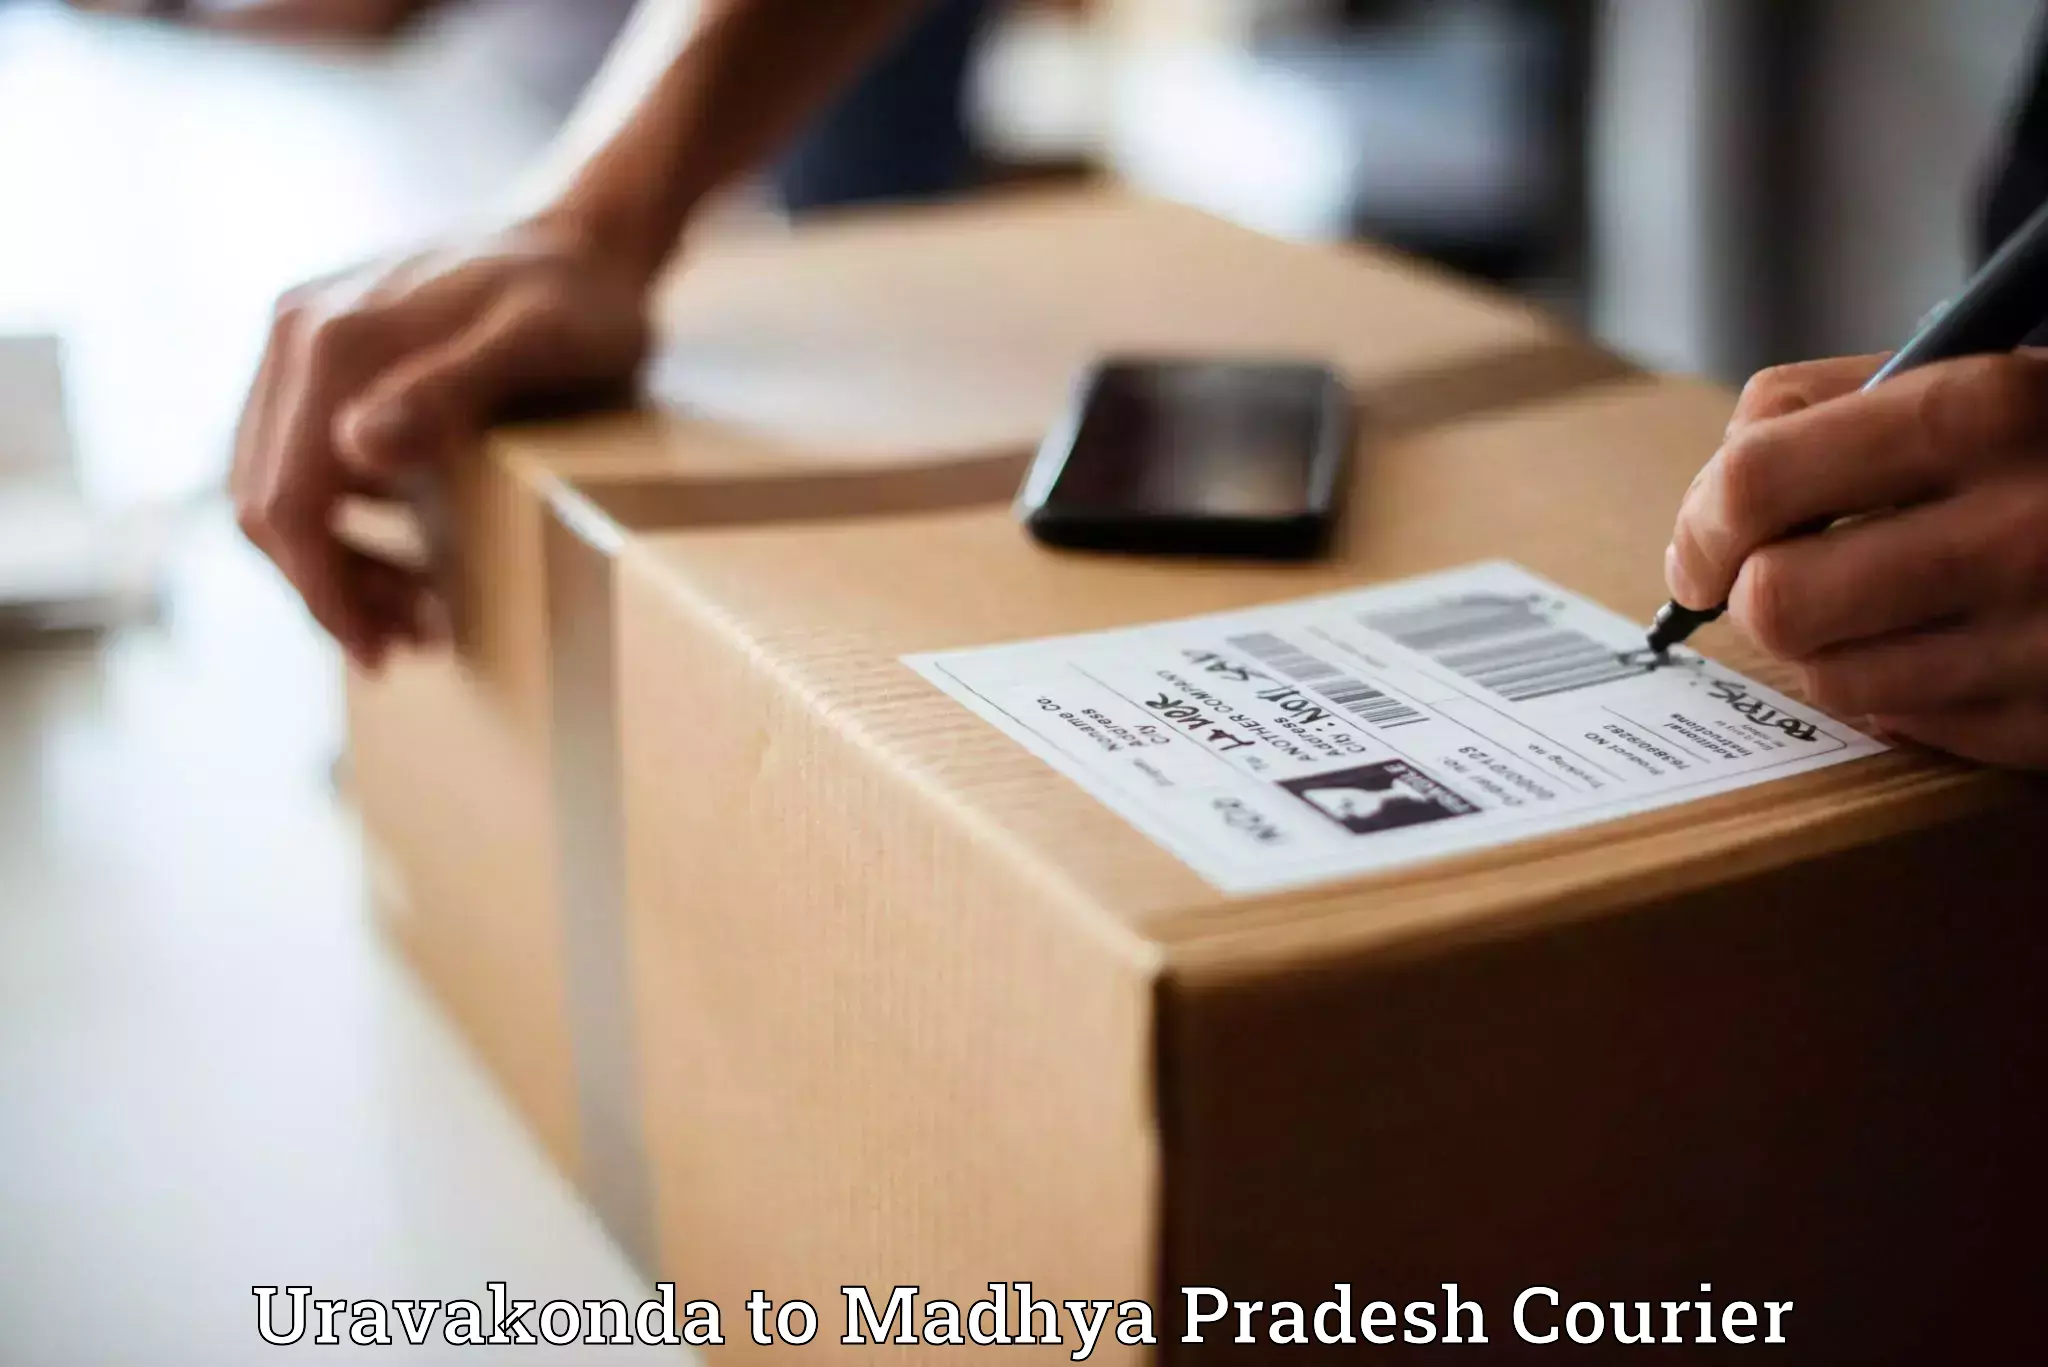 24-hour courier service Uravakonda to Gadarwara